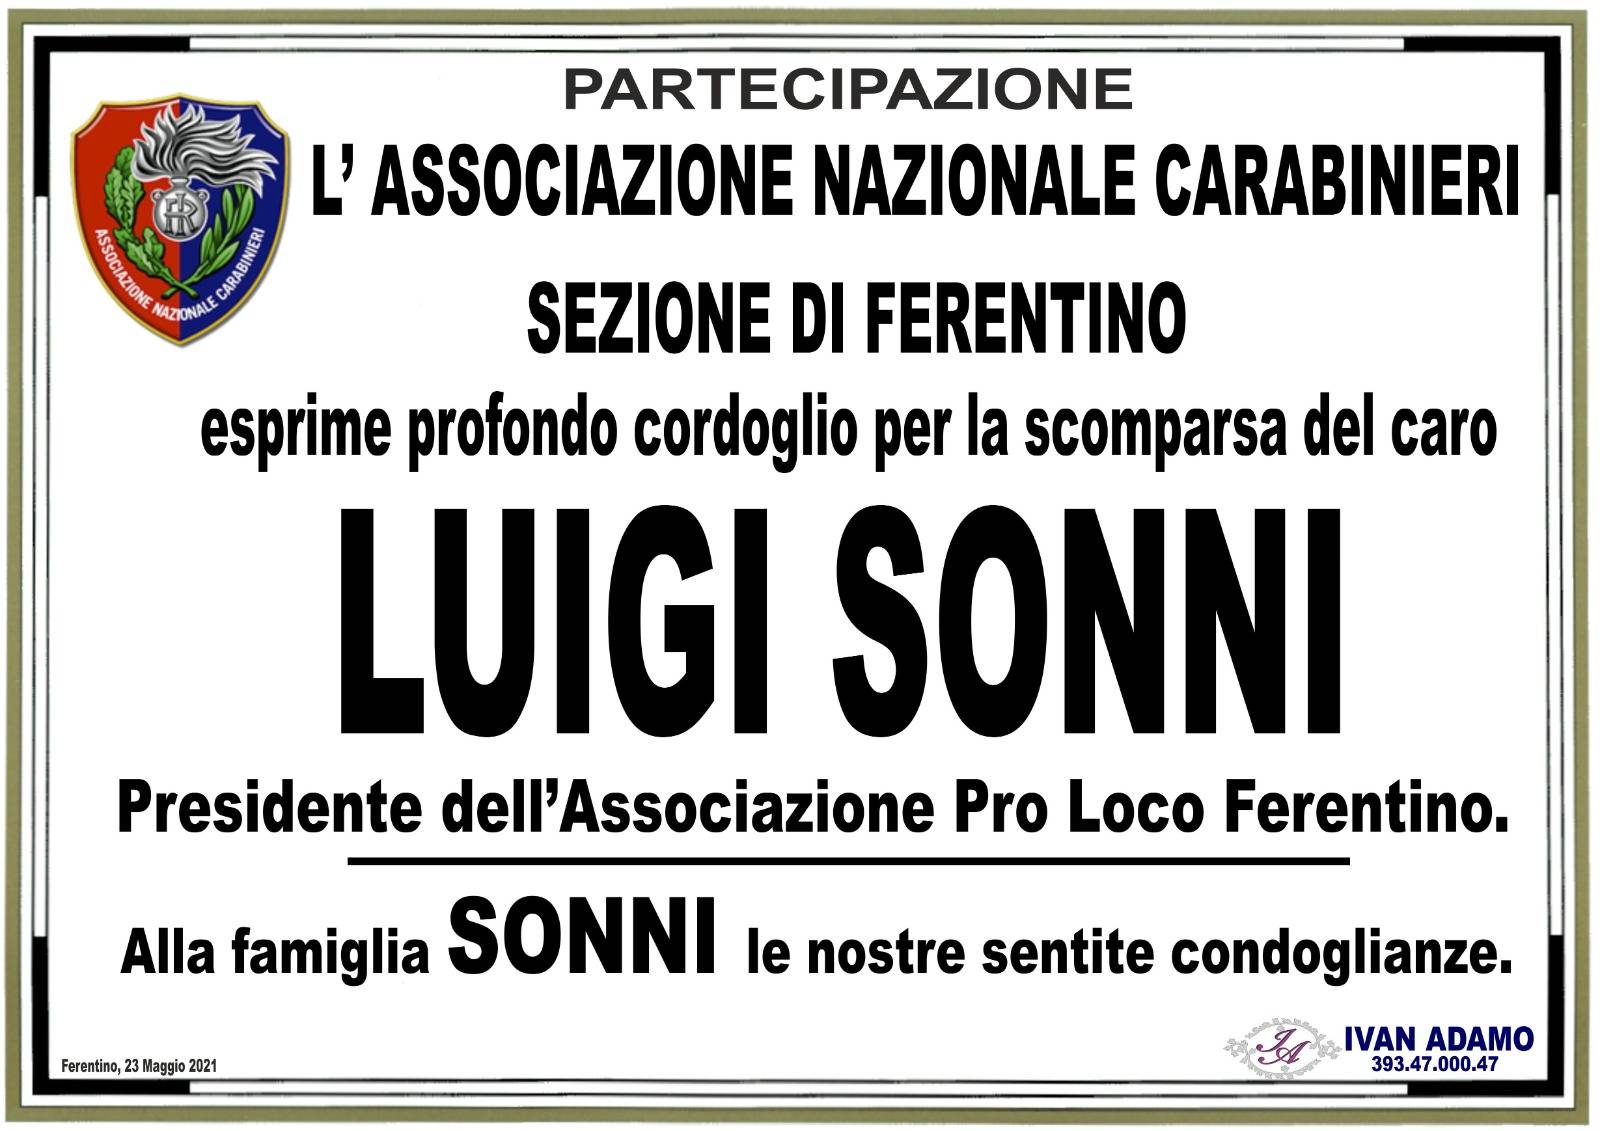 Associazione Nazionale Carabinieri - Sezione Ferentino